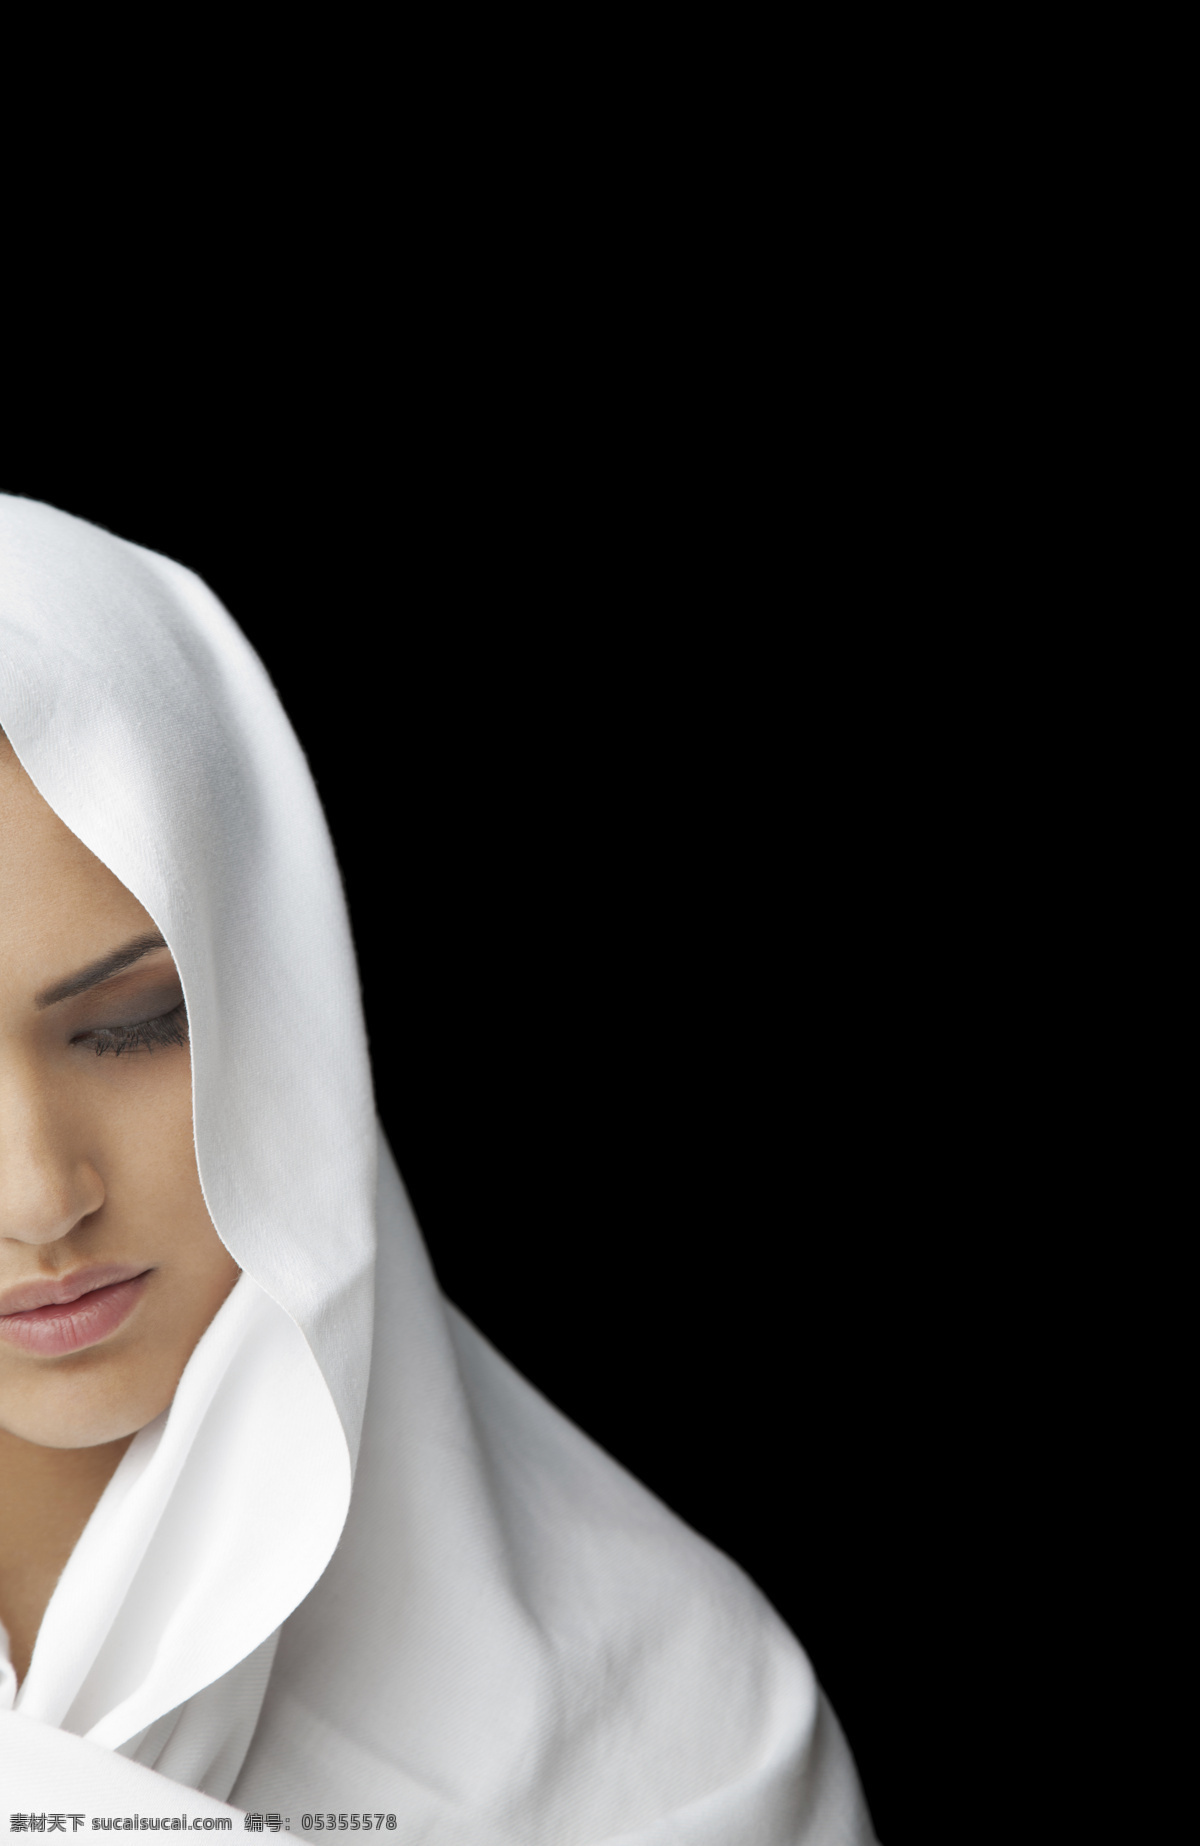 戴 头巾 阿拉伯 美女图片 阿拉伯女性 阿拉伯妇女 外国女性 外国女人 生活人物 人物图片